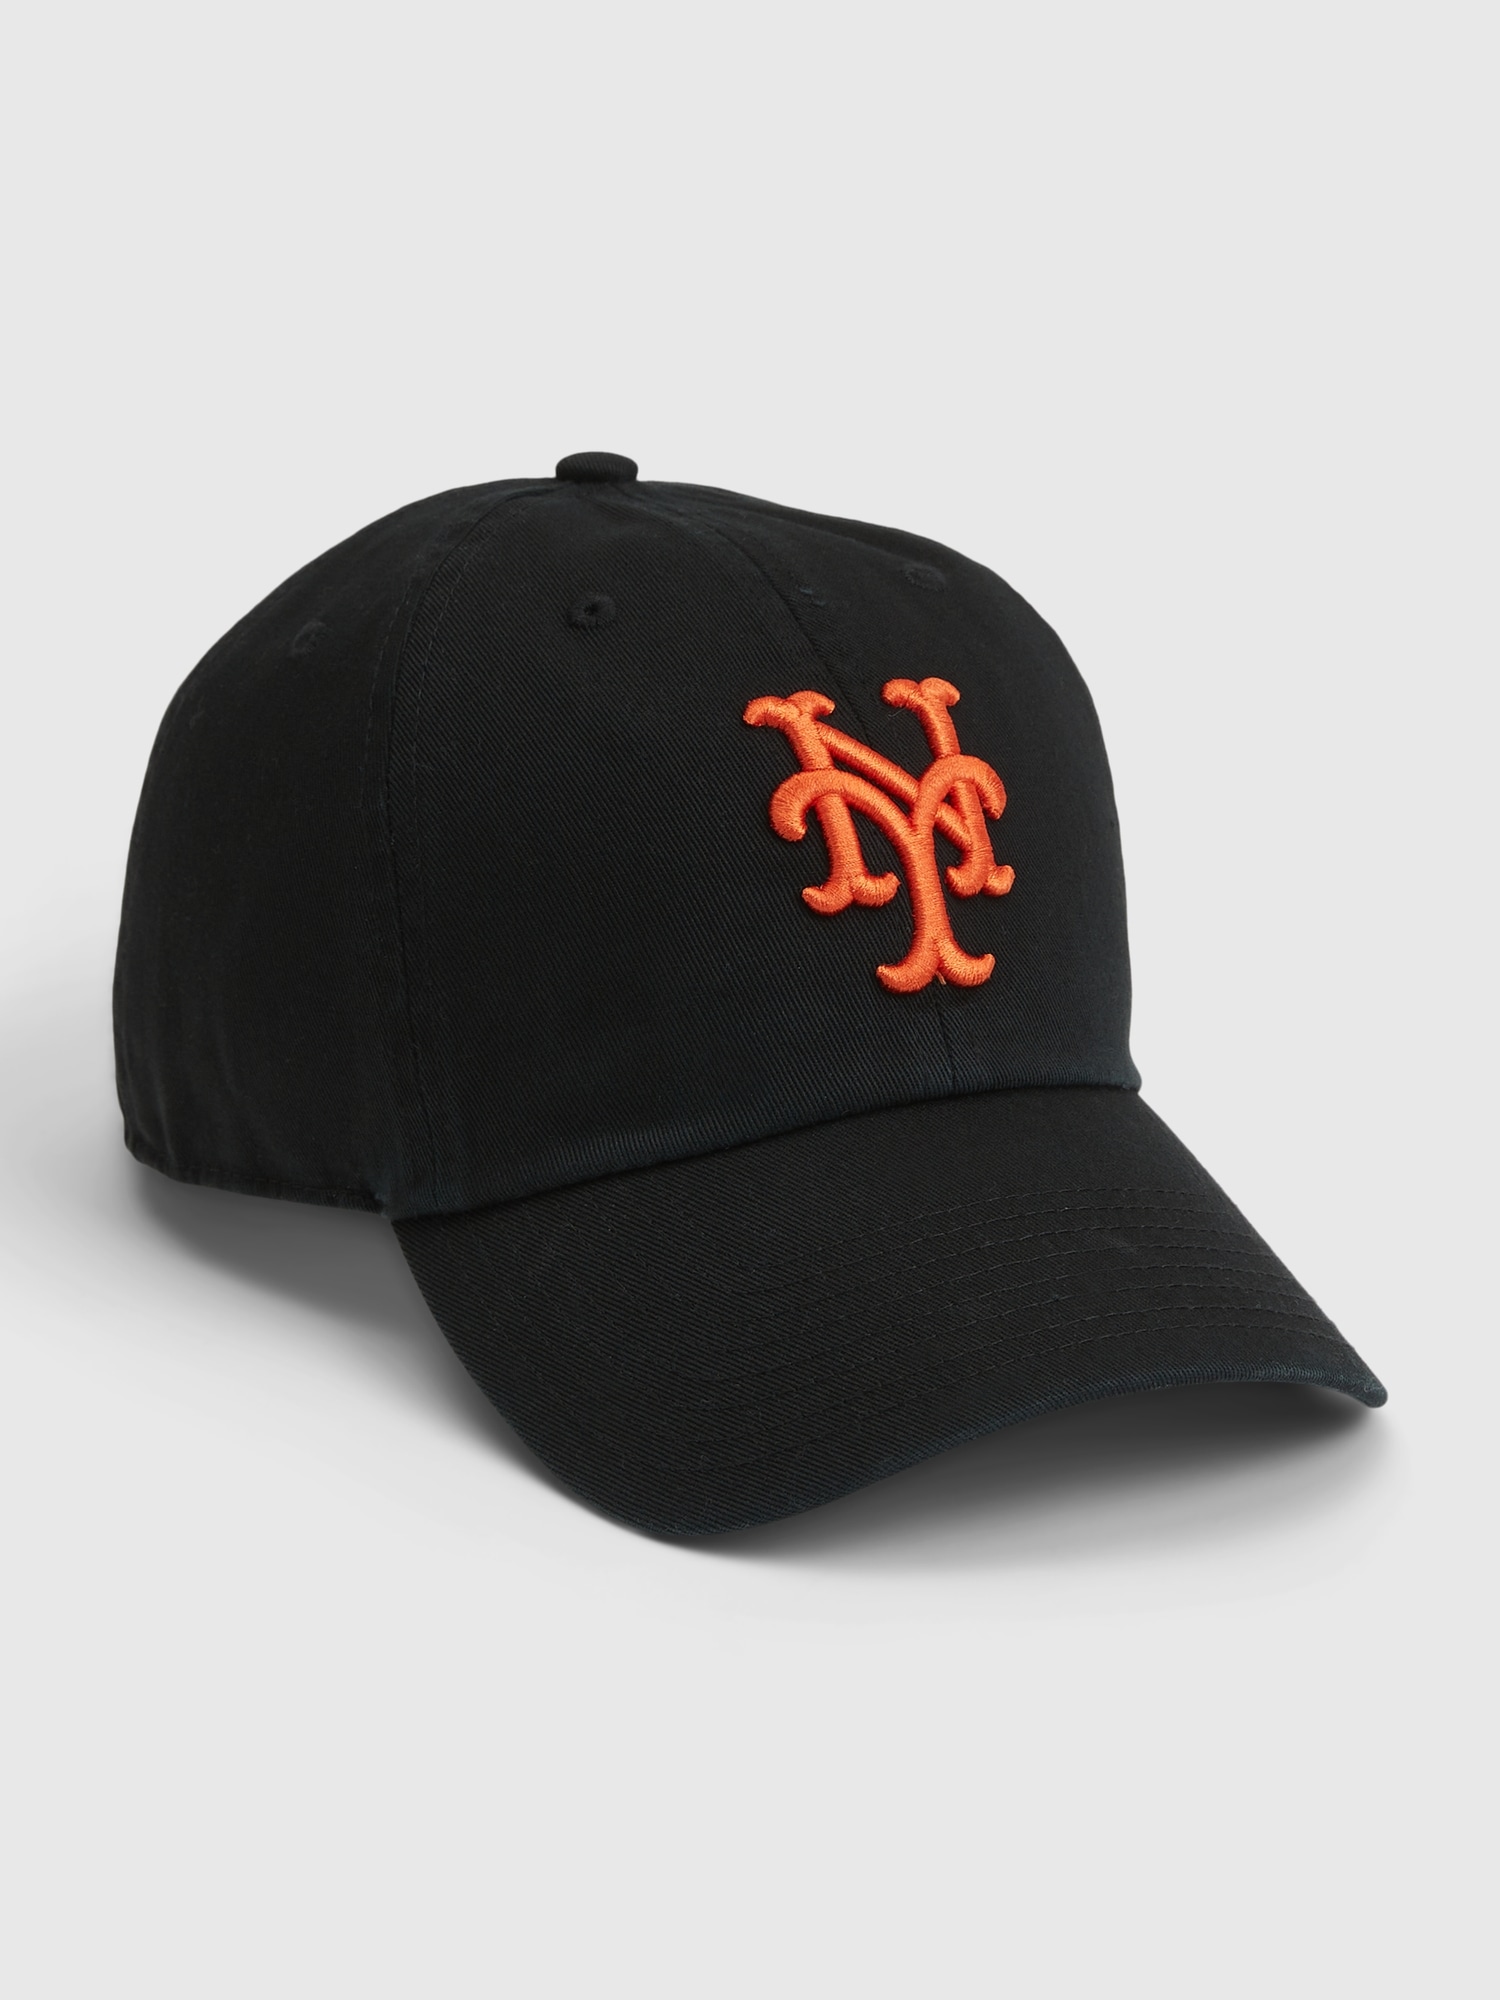 Gap New York Mets Baseball Hat In Vintage Black